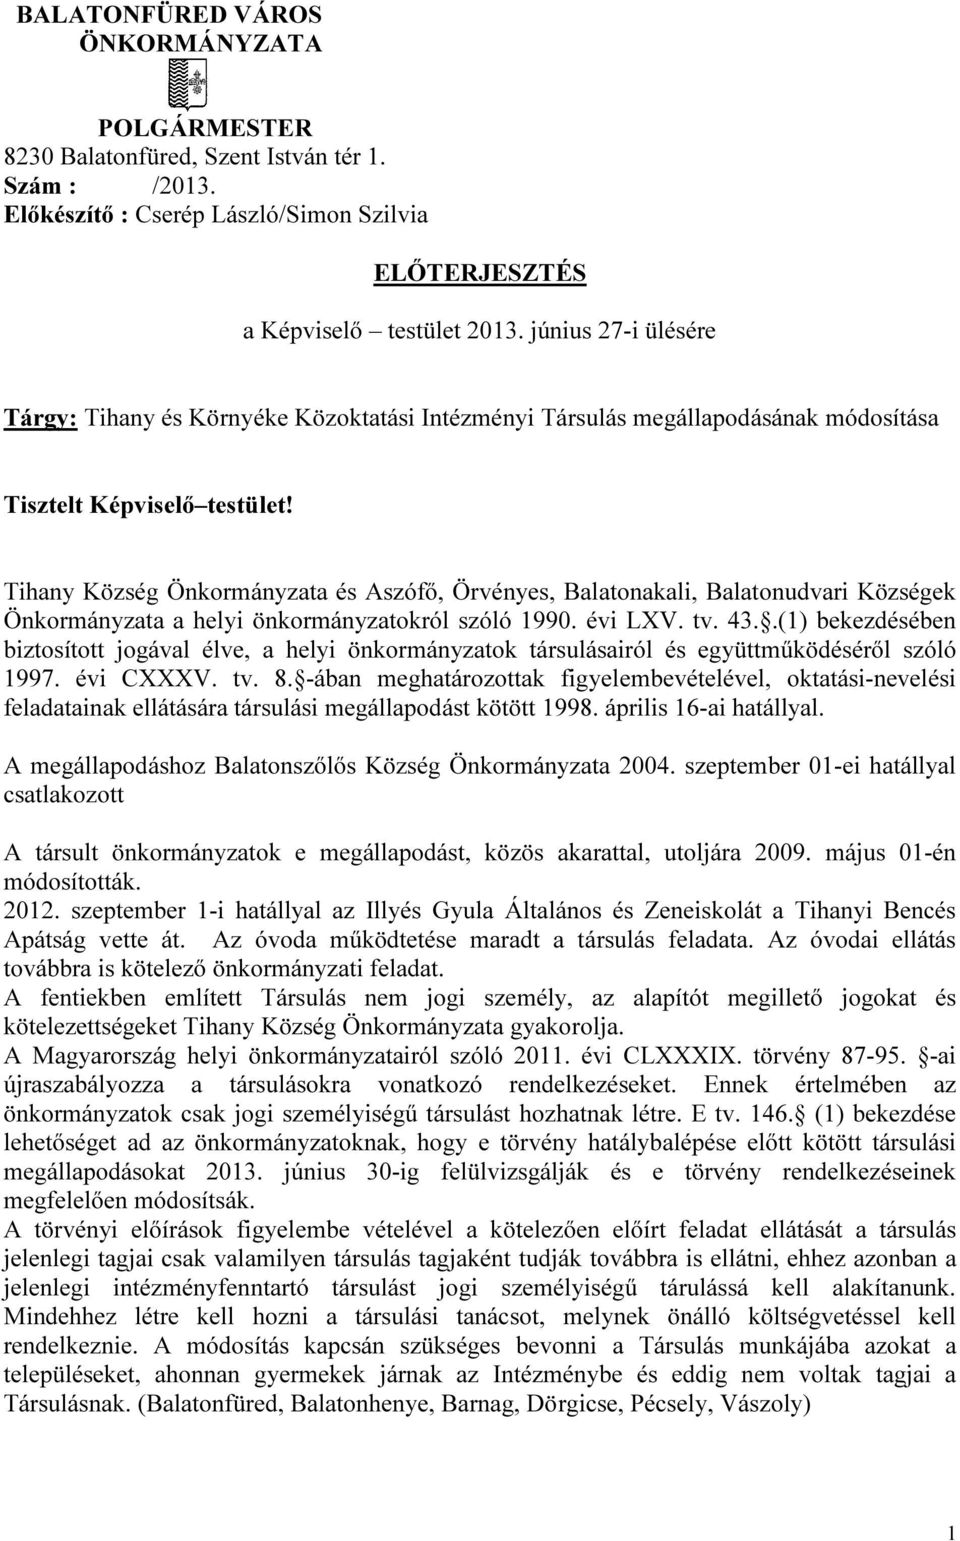 Tihany Község Önkormányzata és Aszófő, Örvényes, Balatonakali, Balatonudvari Községek Önkormányzata a helyi önkormányzatokról szóló 1990. évi LXV. tv. 43.